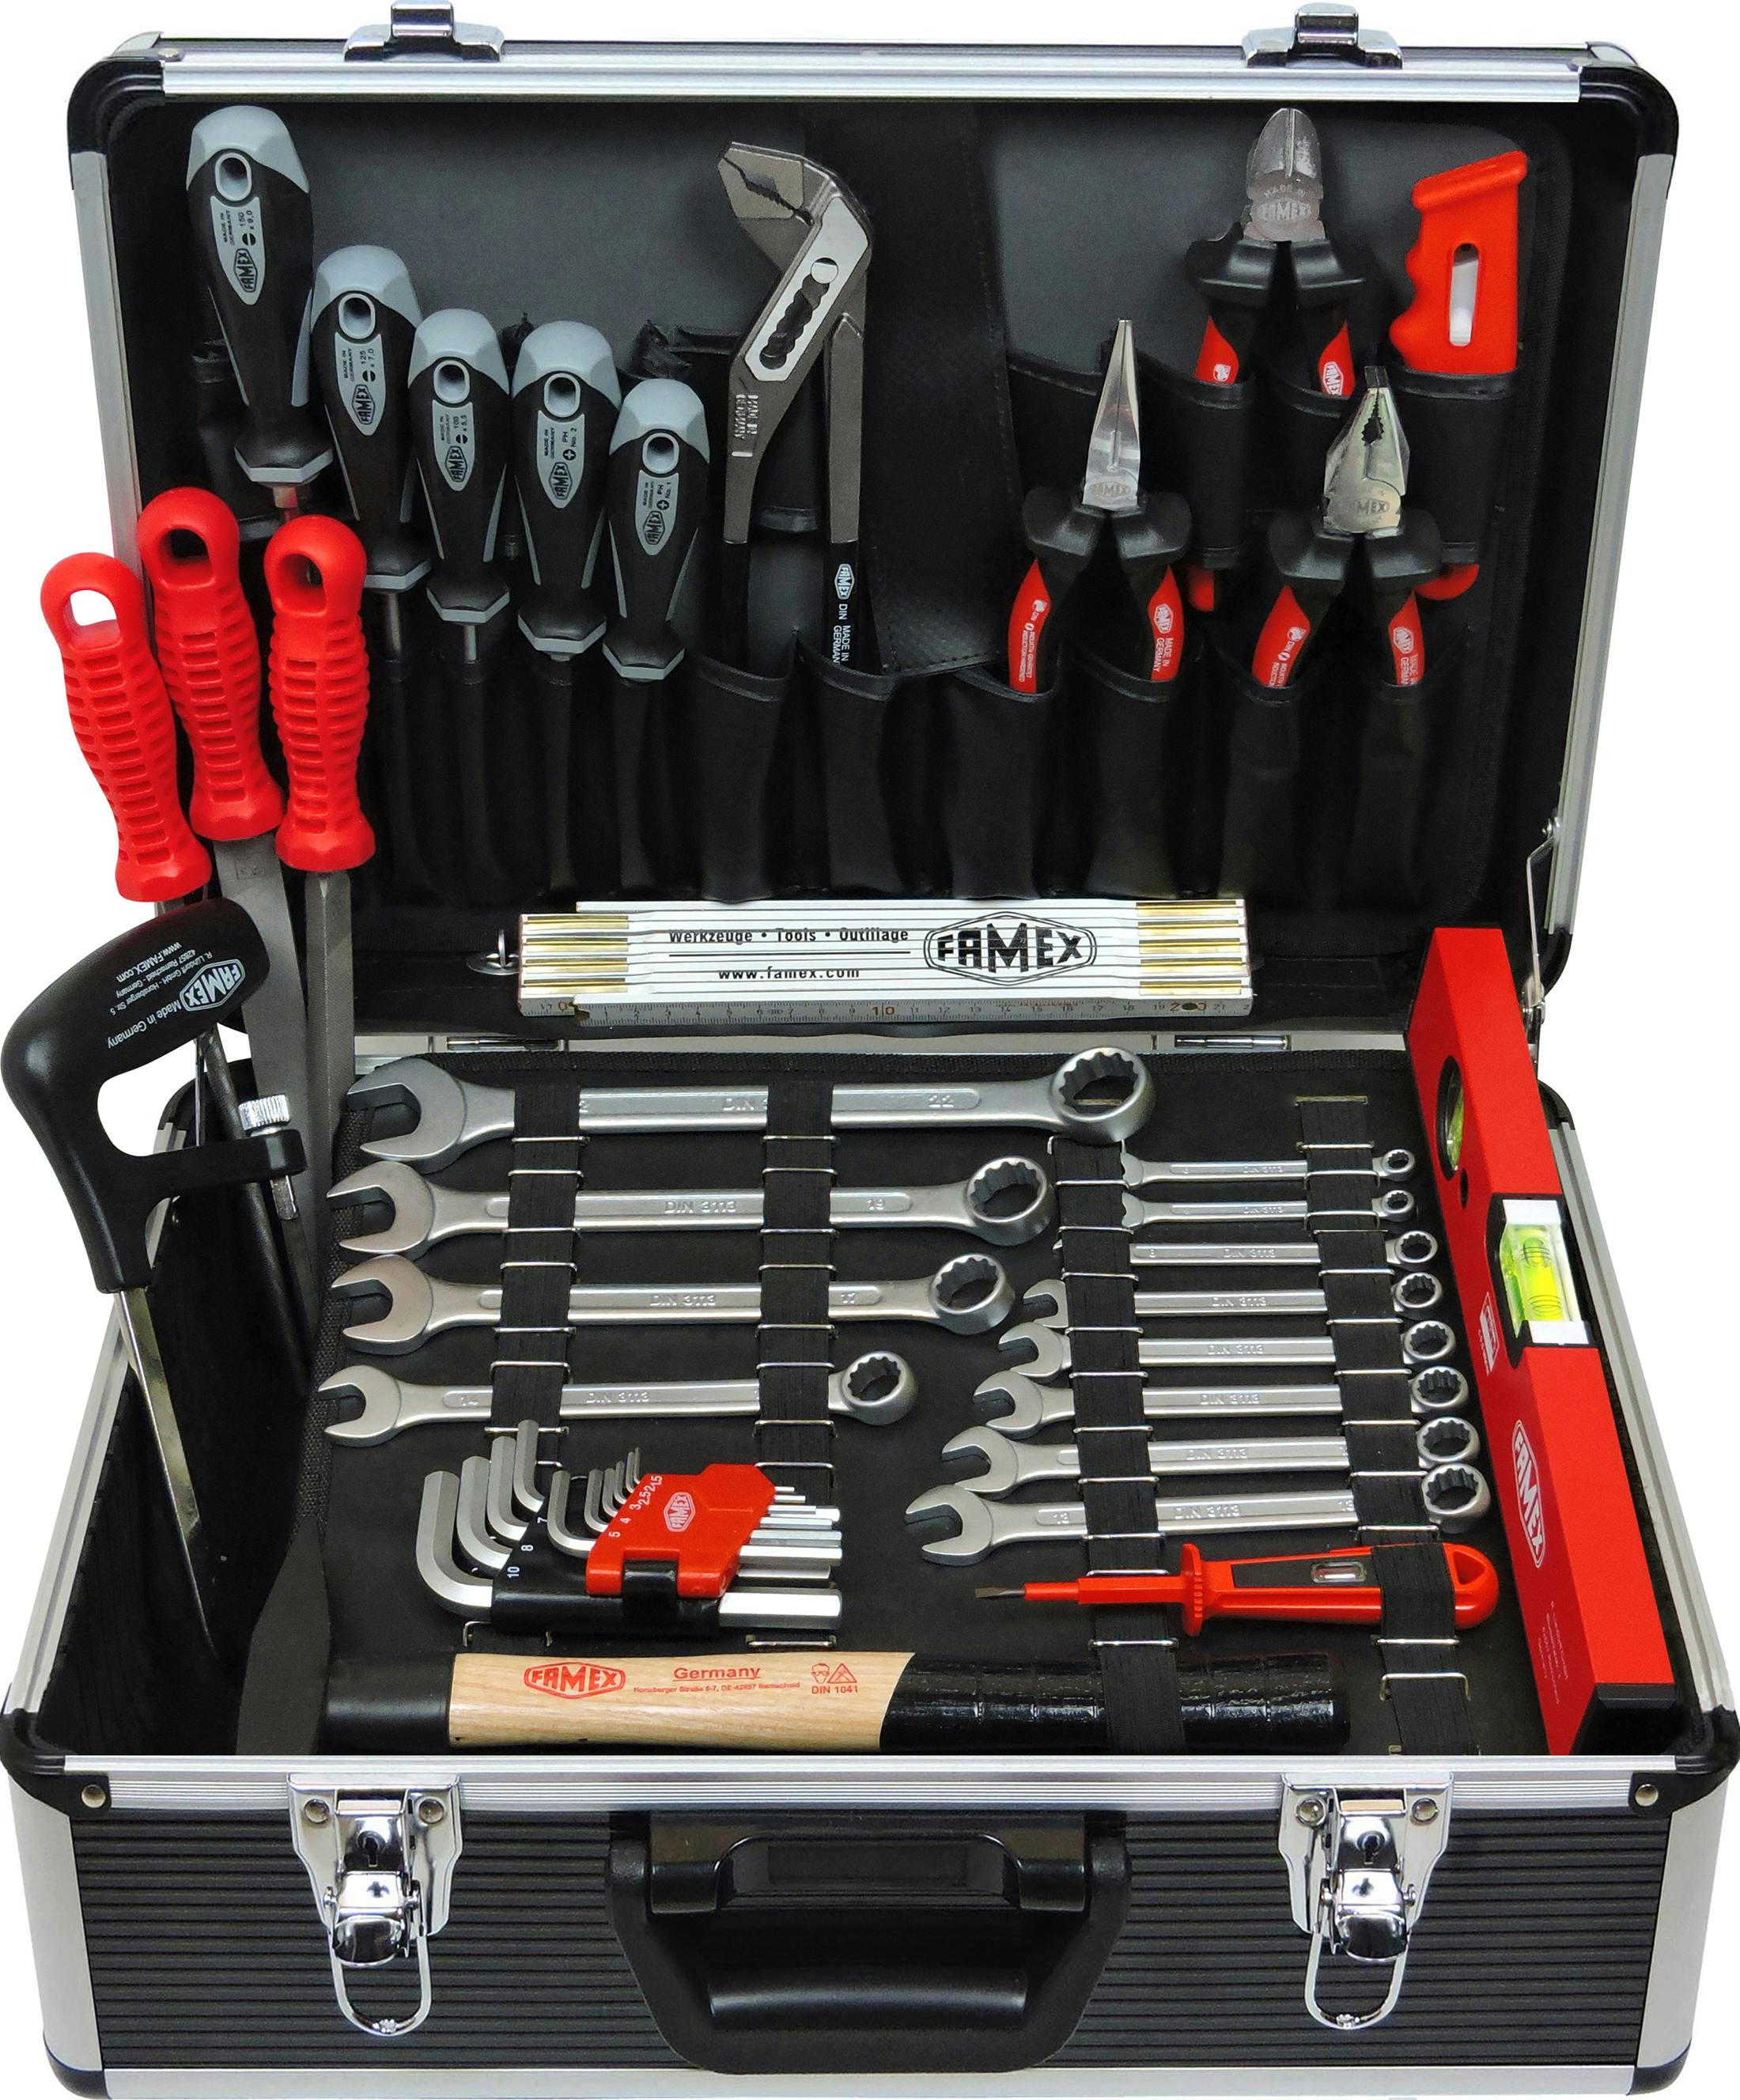 METRO bestückt FAMEX Werkzeug Profi | - Marktplatz Alu-Werkzeugkoffer 749-88 PROFFESIONAL mit